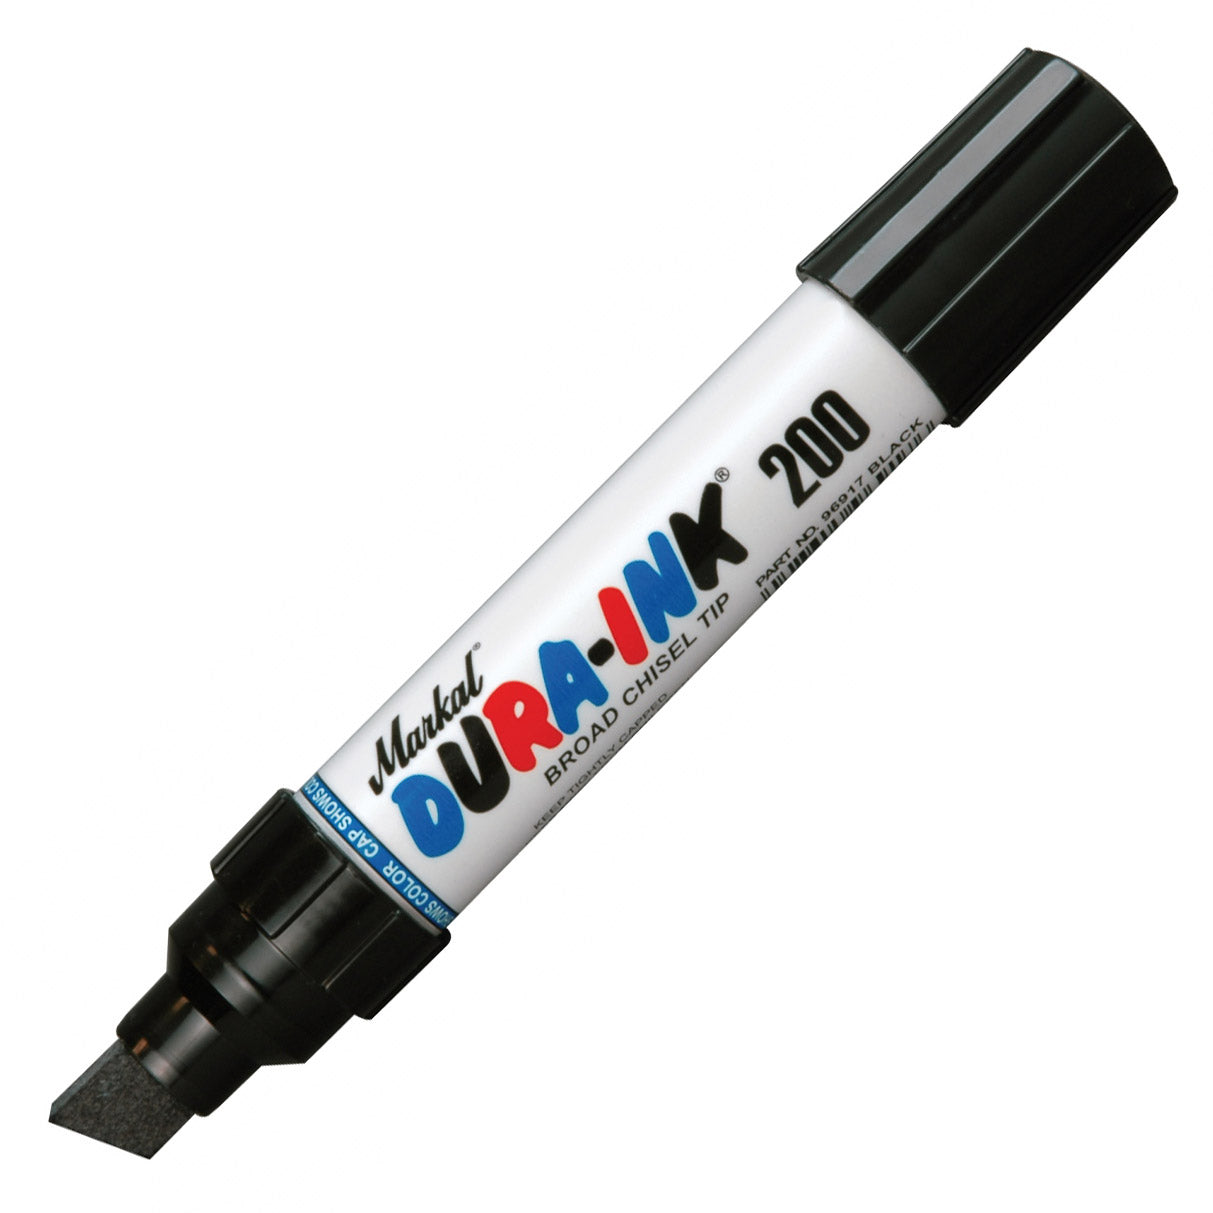 Markal Dura-Ink 15 - Fine Tip Marker - Black